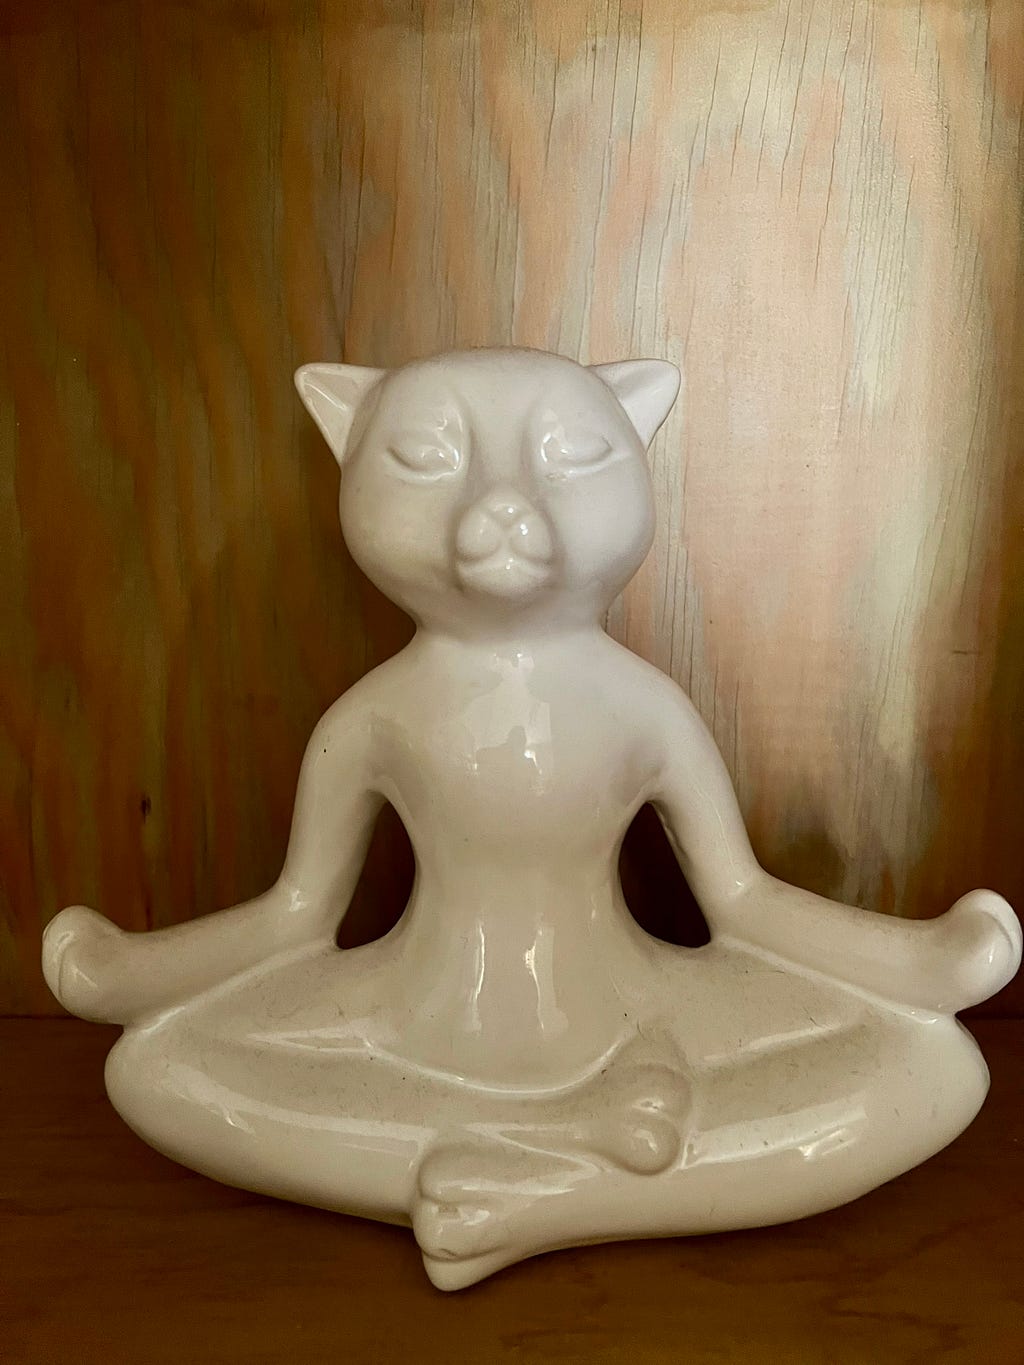 A porcelain white cat statue.